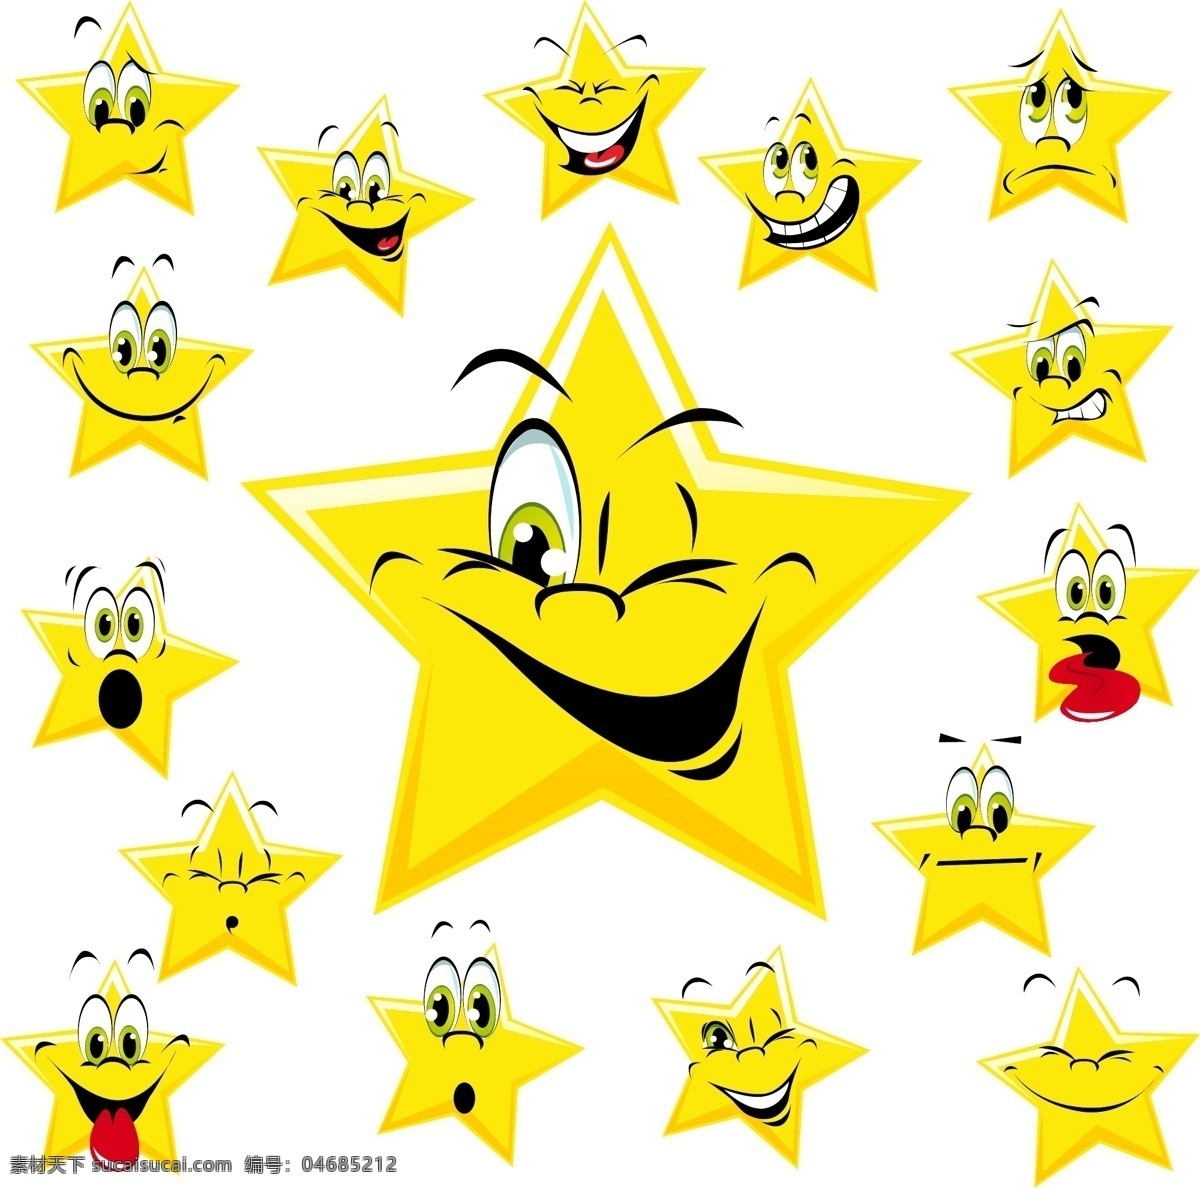 可爱 卡通 星星 表情 五角星 笑脸 有趣 滑稽 幽默 手绘 矢量 蔬菜水果 卡通设计